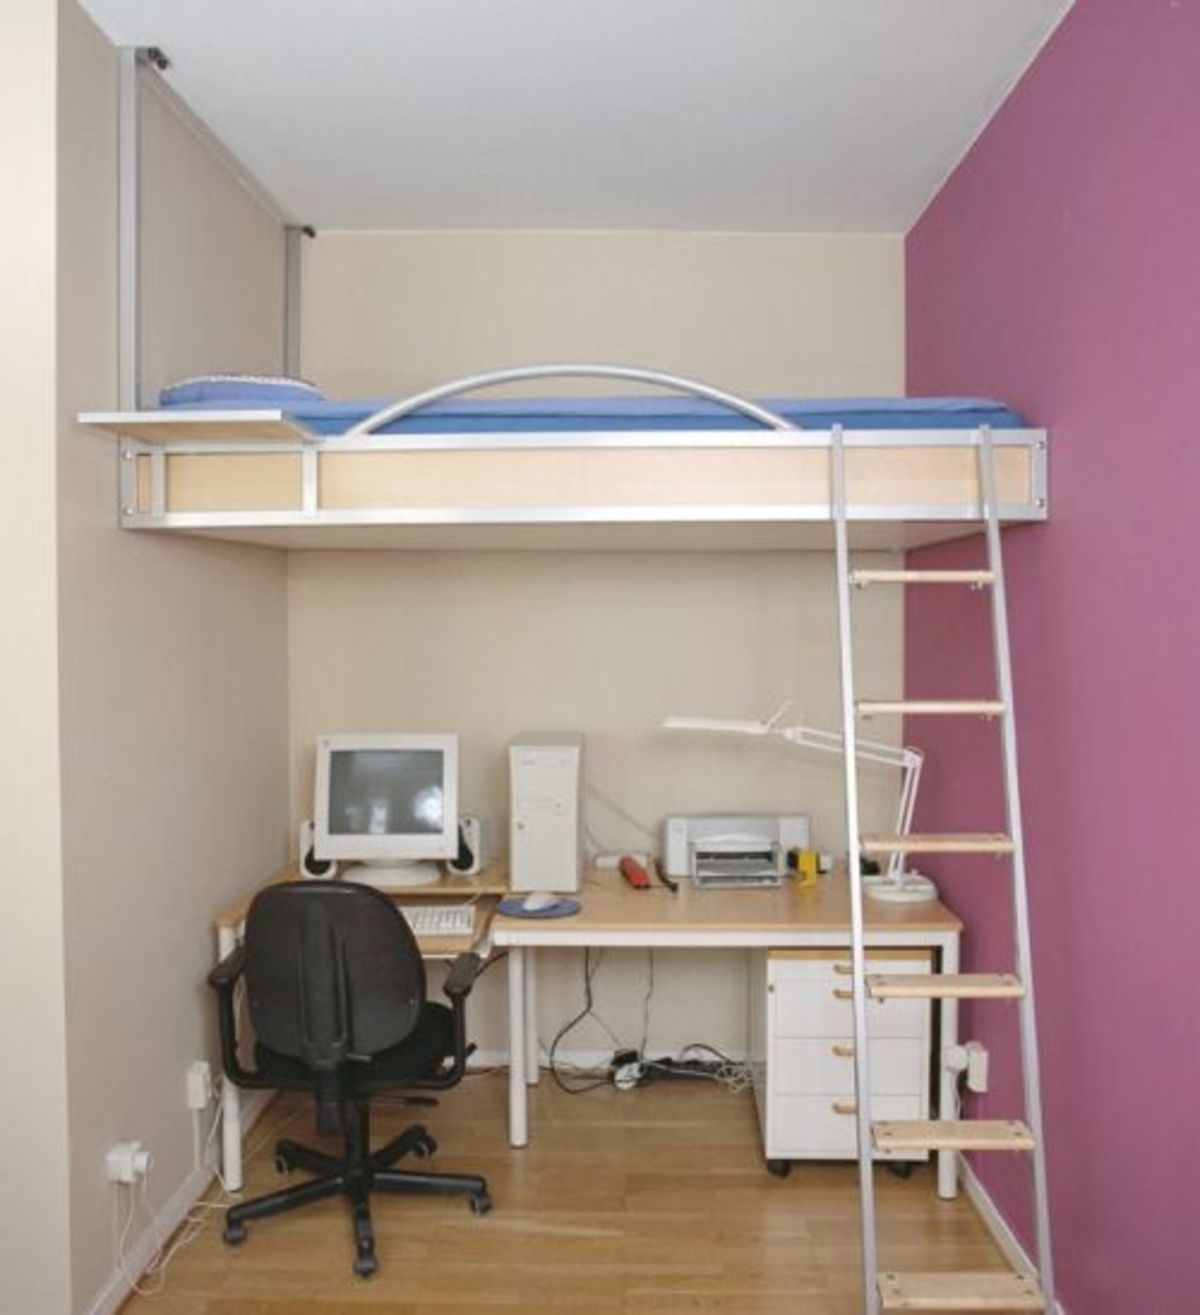 bunk beds space saving